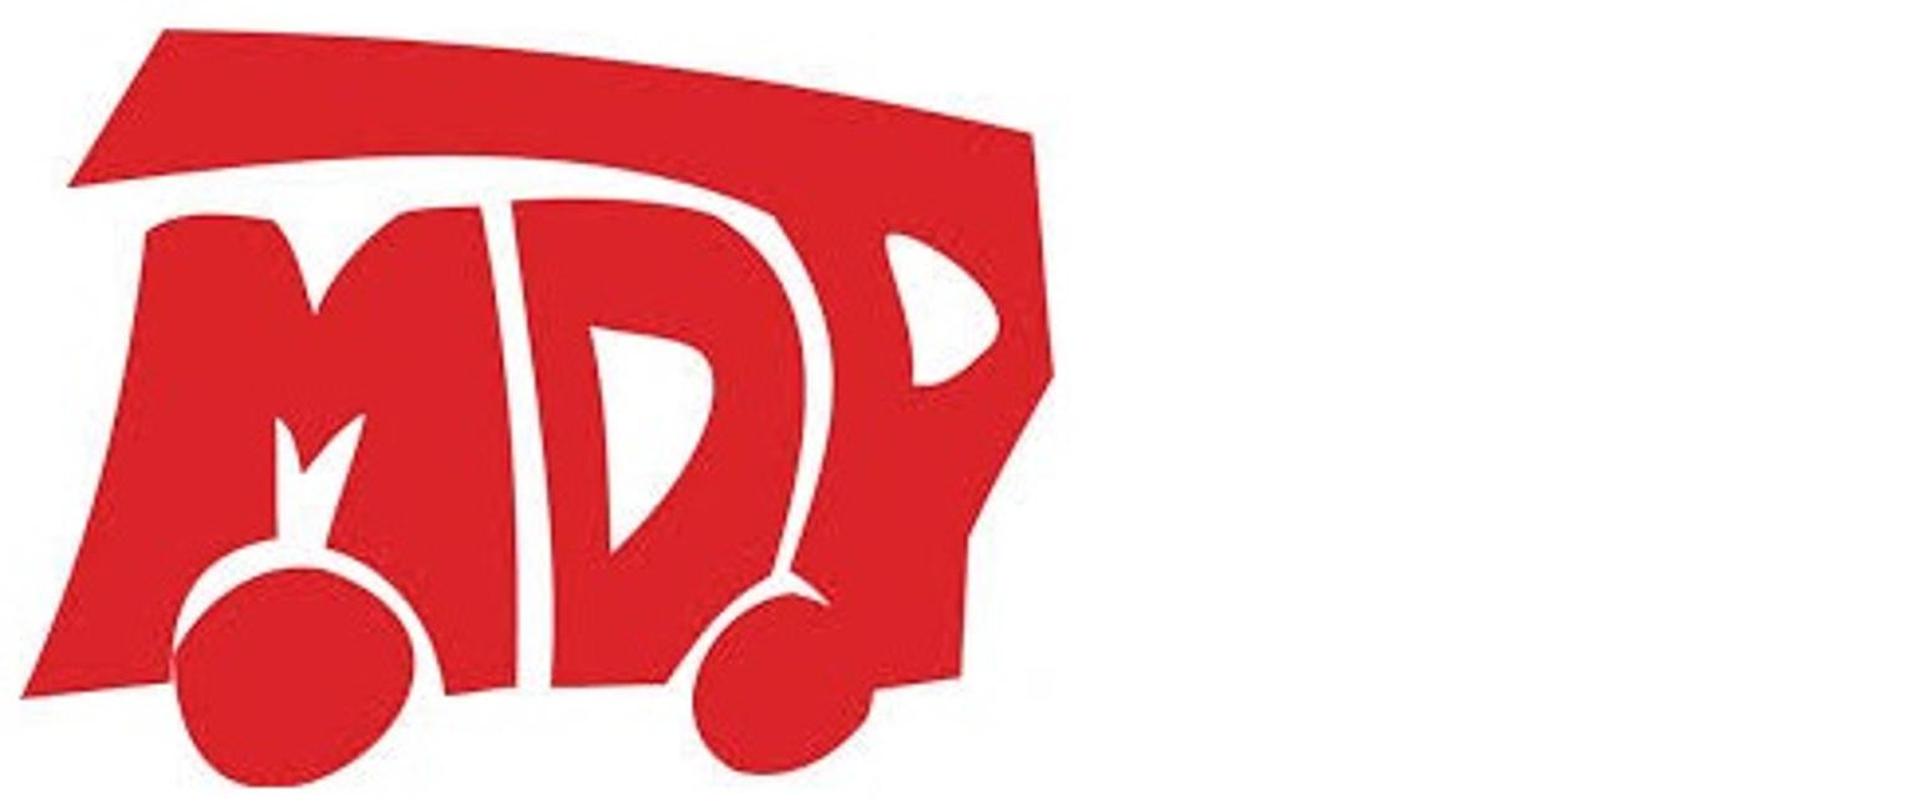 Grafika przedstawia czerwony napis MDP na białym tle